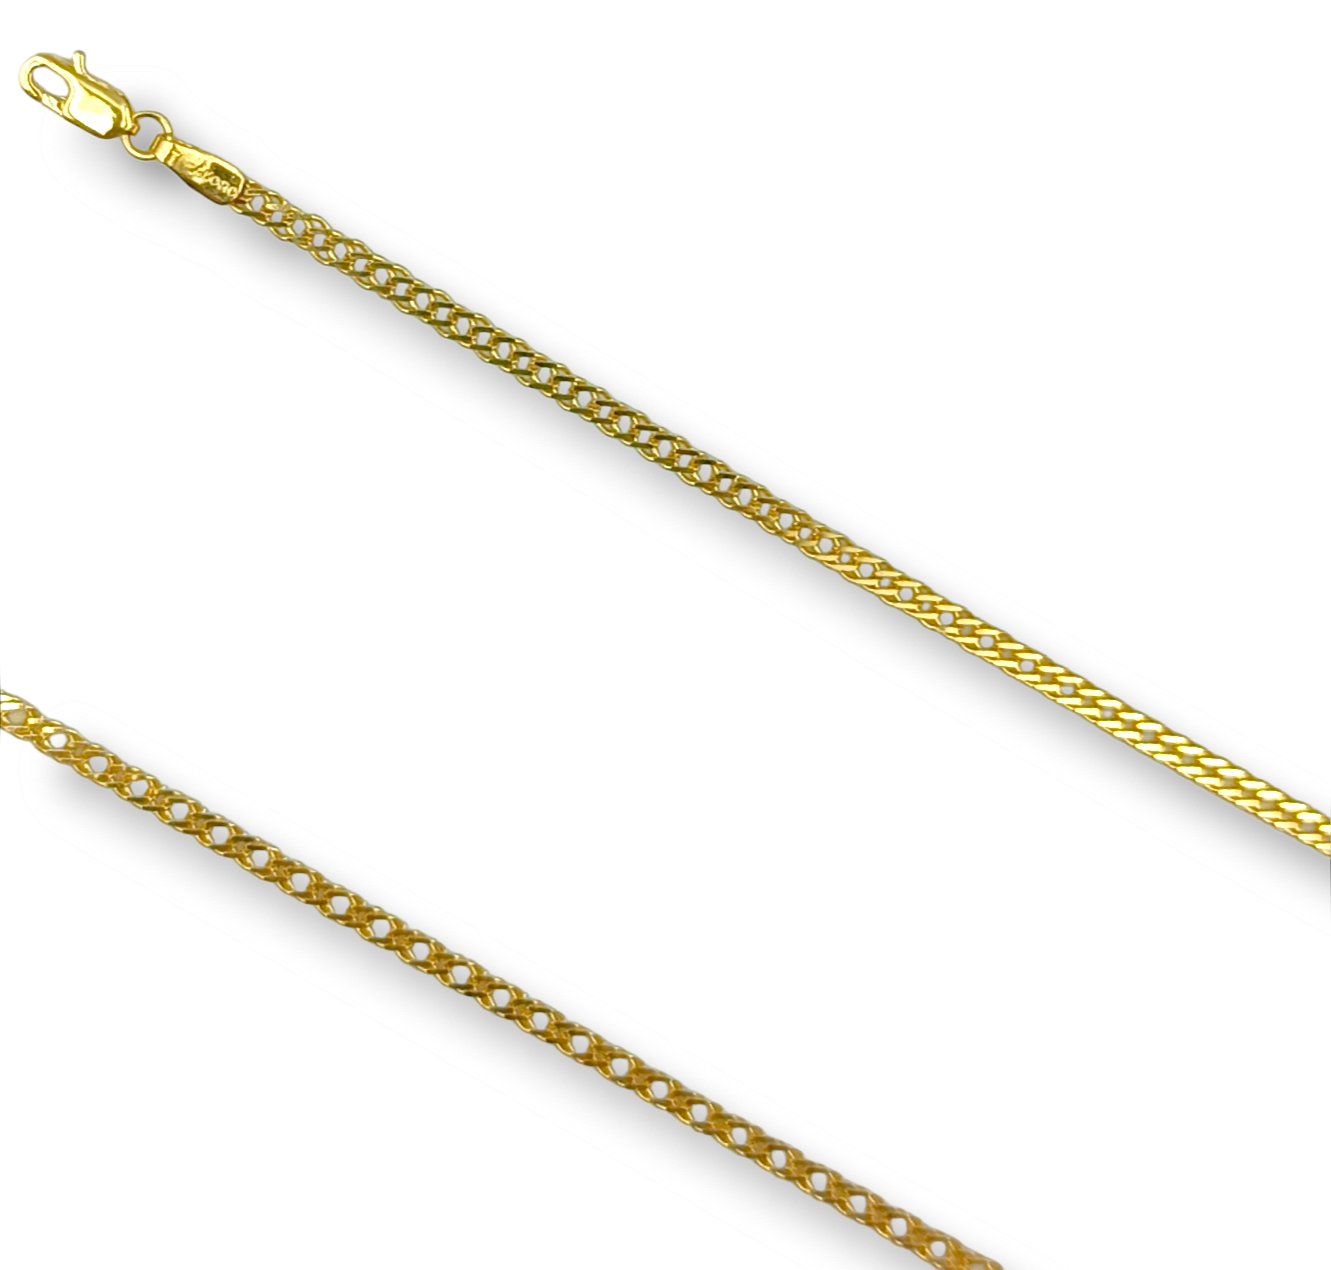 Gold chain 55cm Romvos design